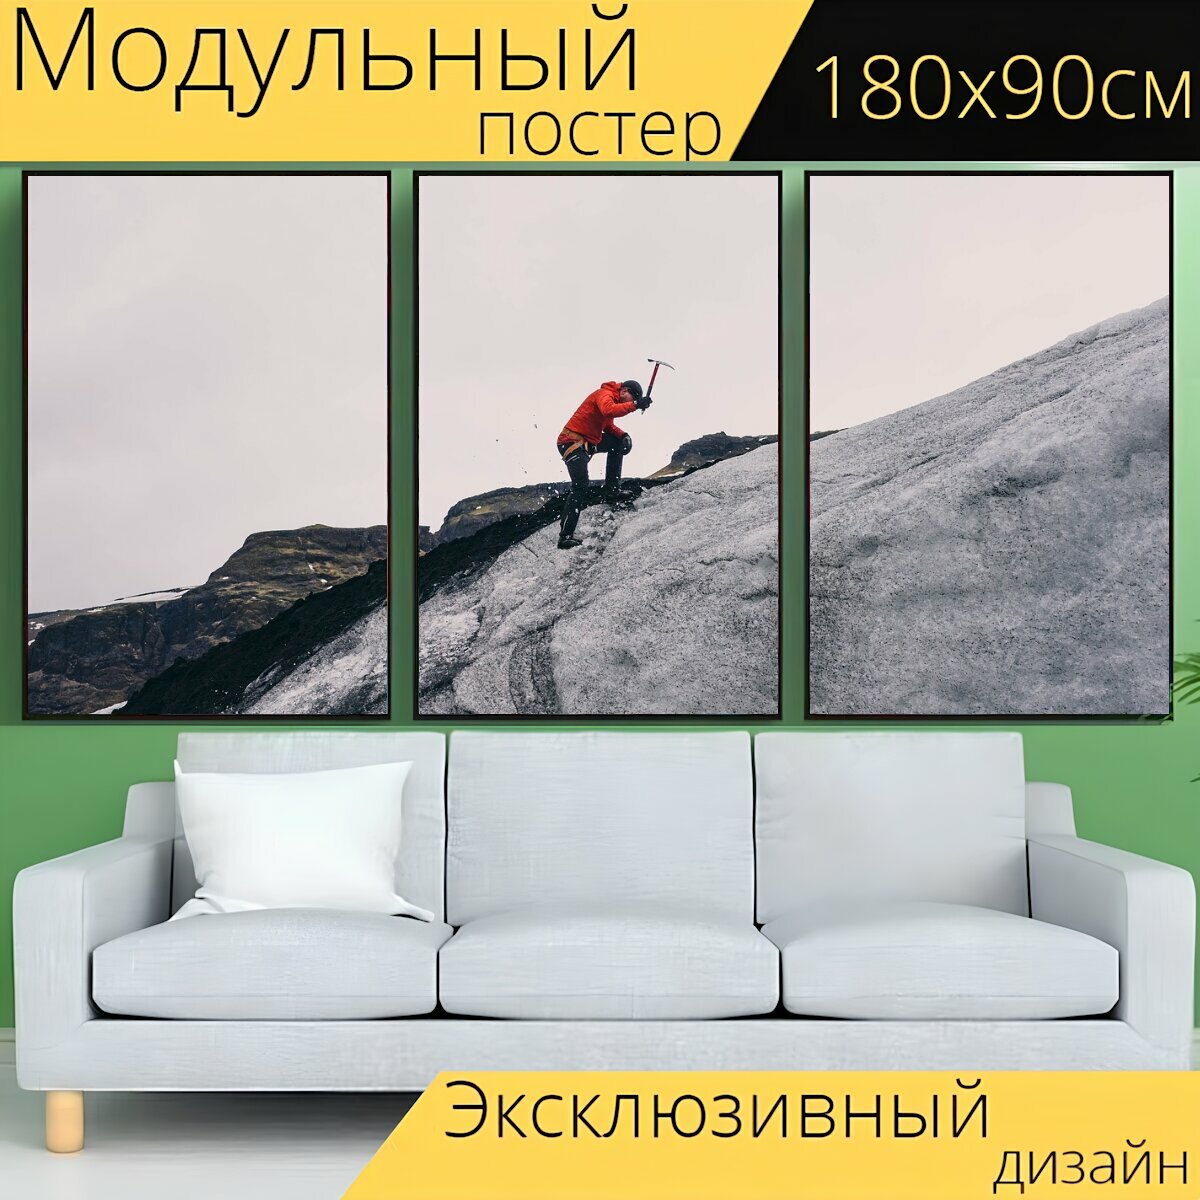 Модульный постер "Альпинизм, альпинист, ледоруб" 180 x 90 см. для интерьера